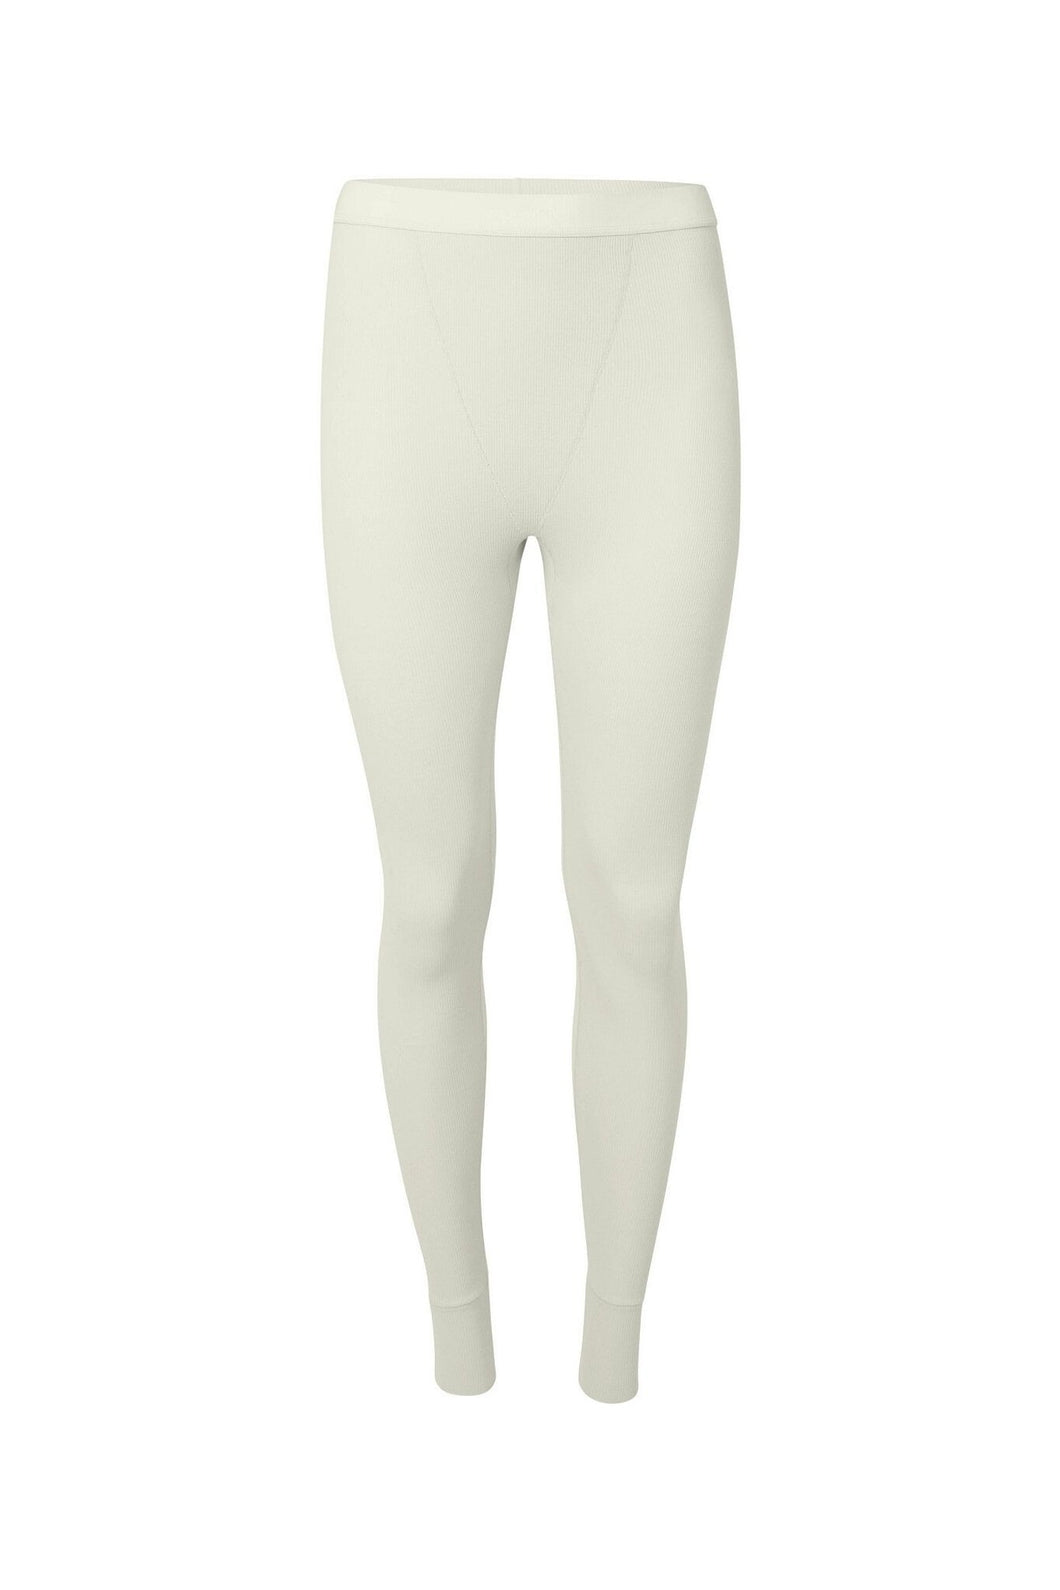 nueskin Laurie Rib Cotton Legging in color Cannoli Cream (Cannoli Cream) and shape legging